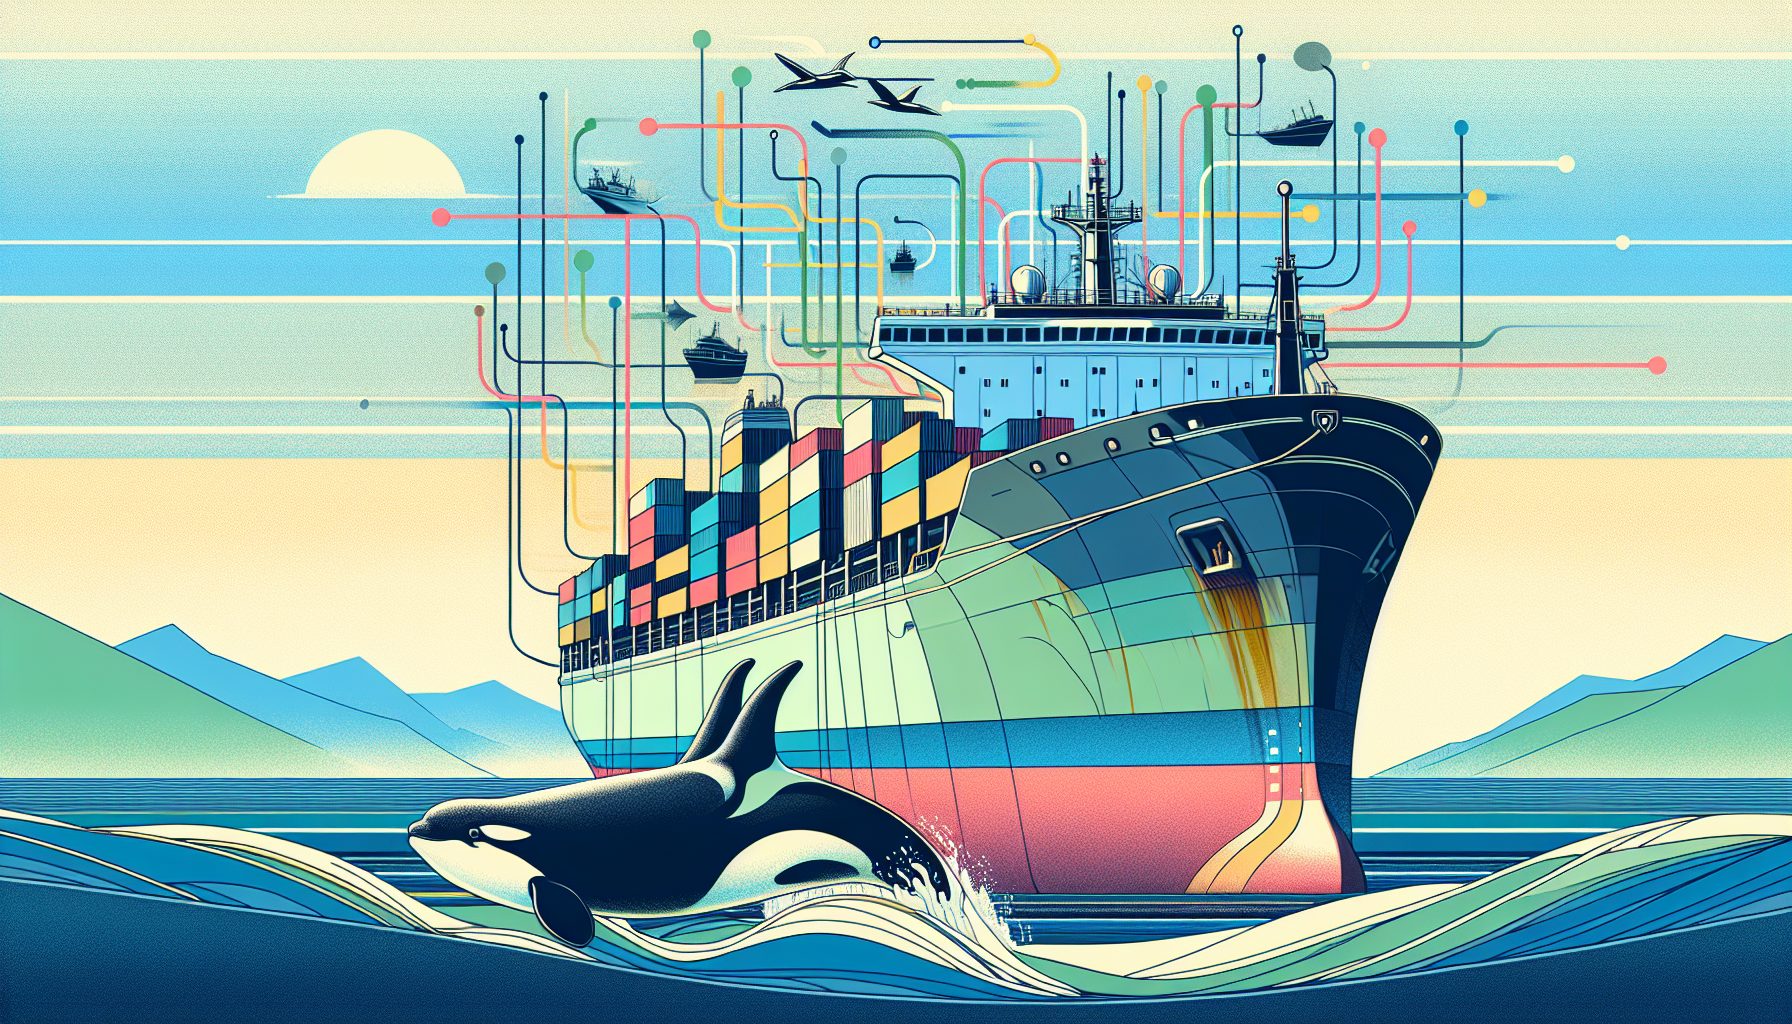 "Maritime AI Orca"